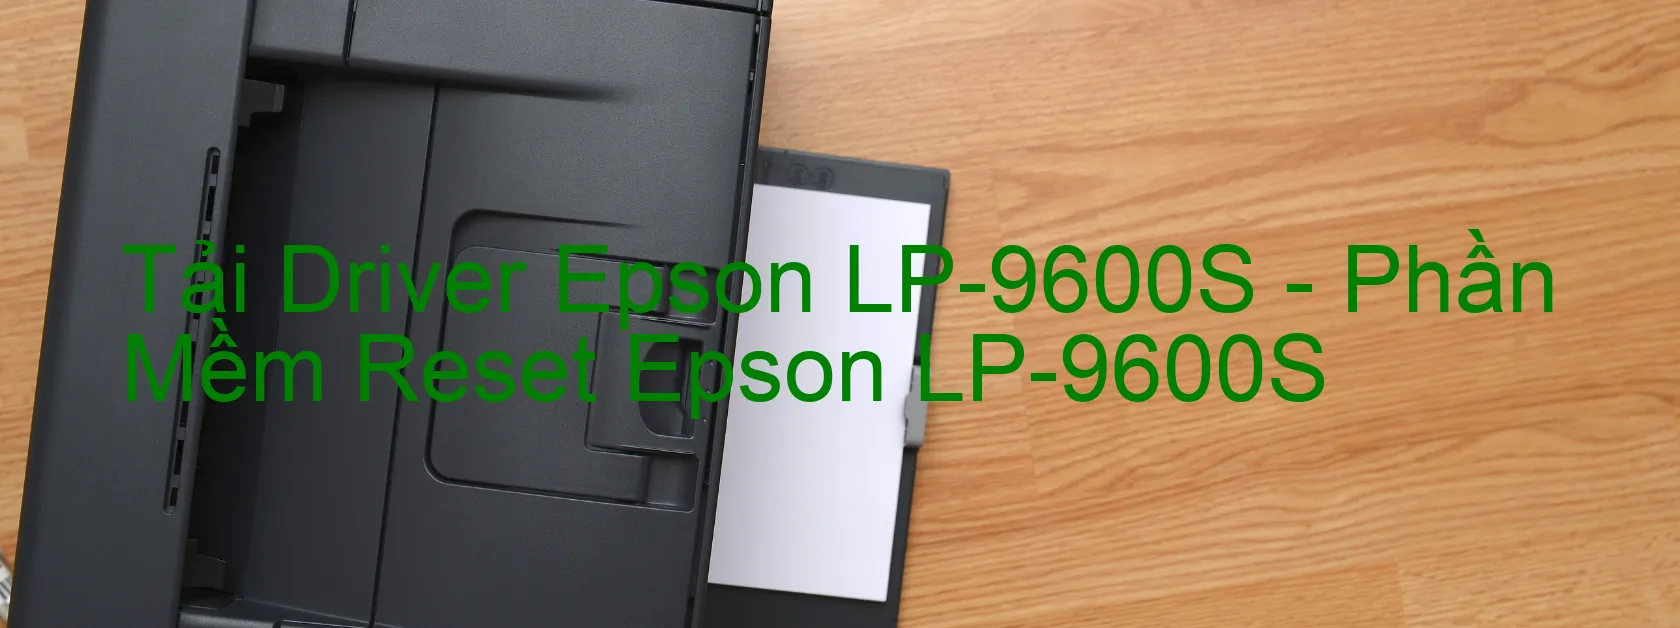 Driver Epson LP-9600S, Phần Mềm Reset Epson LP-9600S